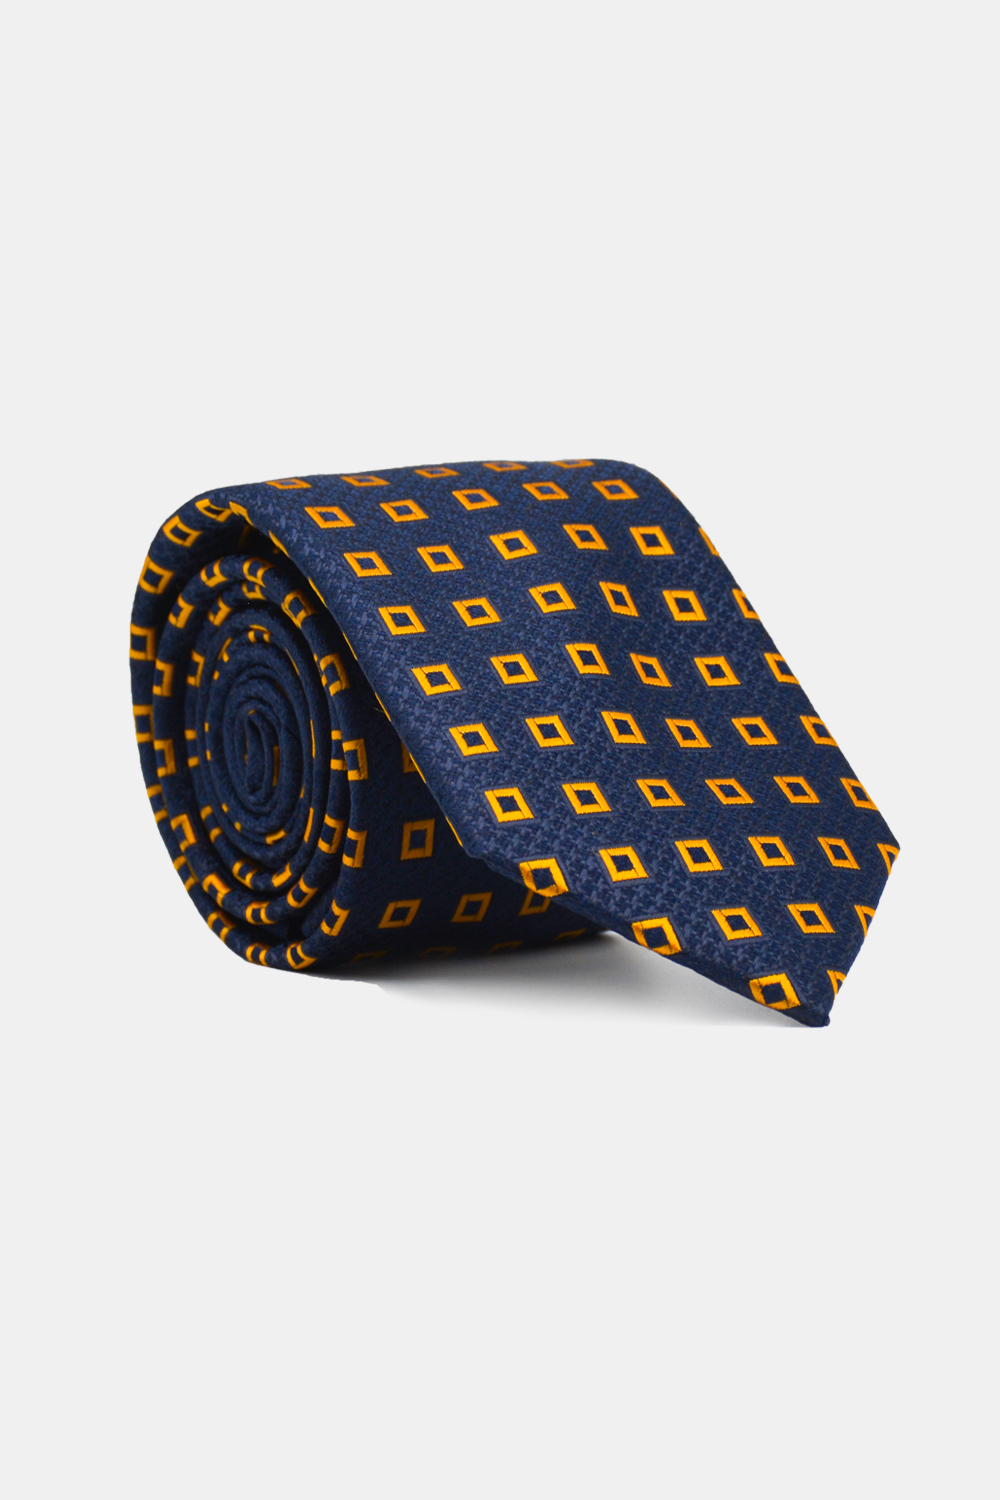 Jacquard Tie 7.5 cm Dark Blue - TIE HOUSE